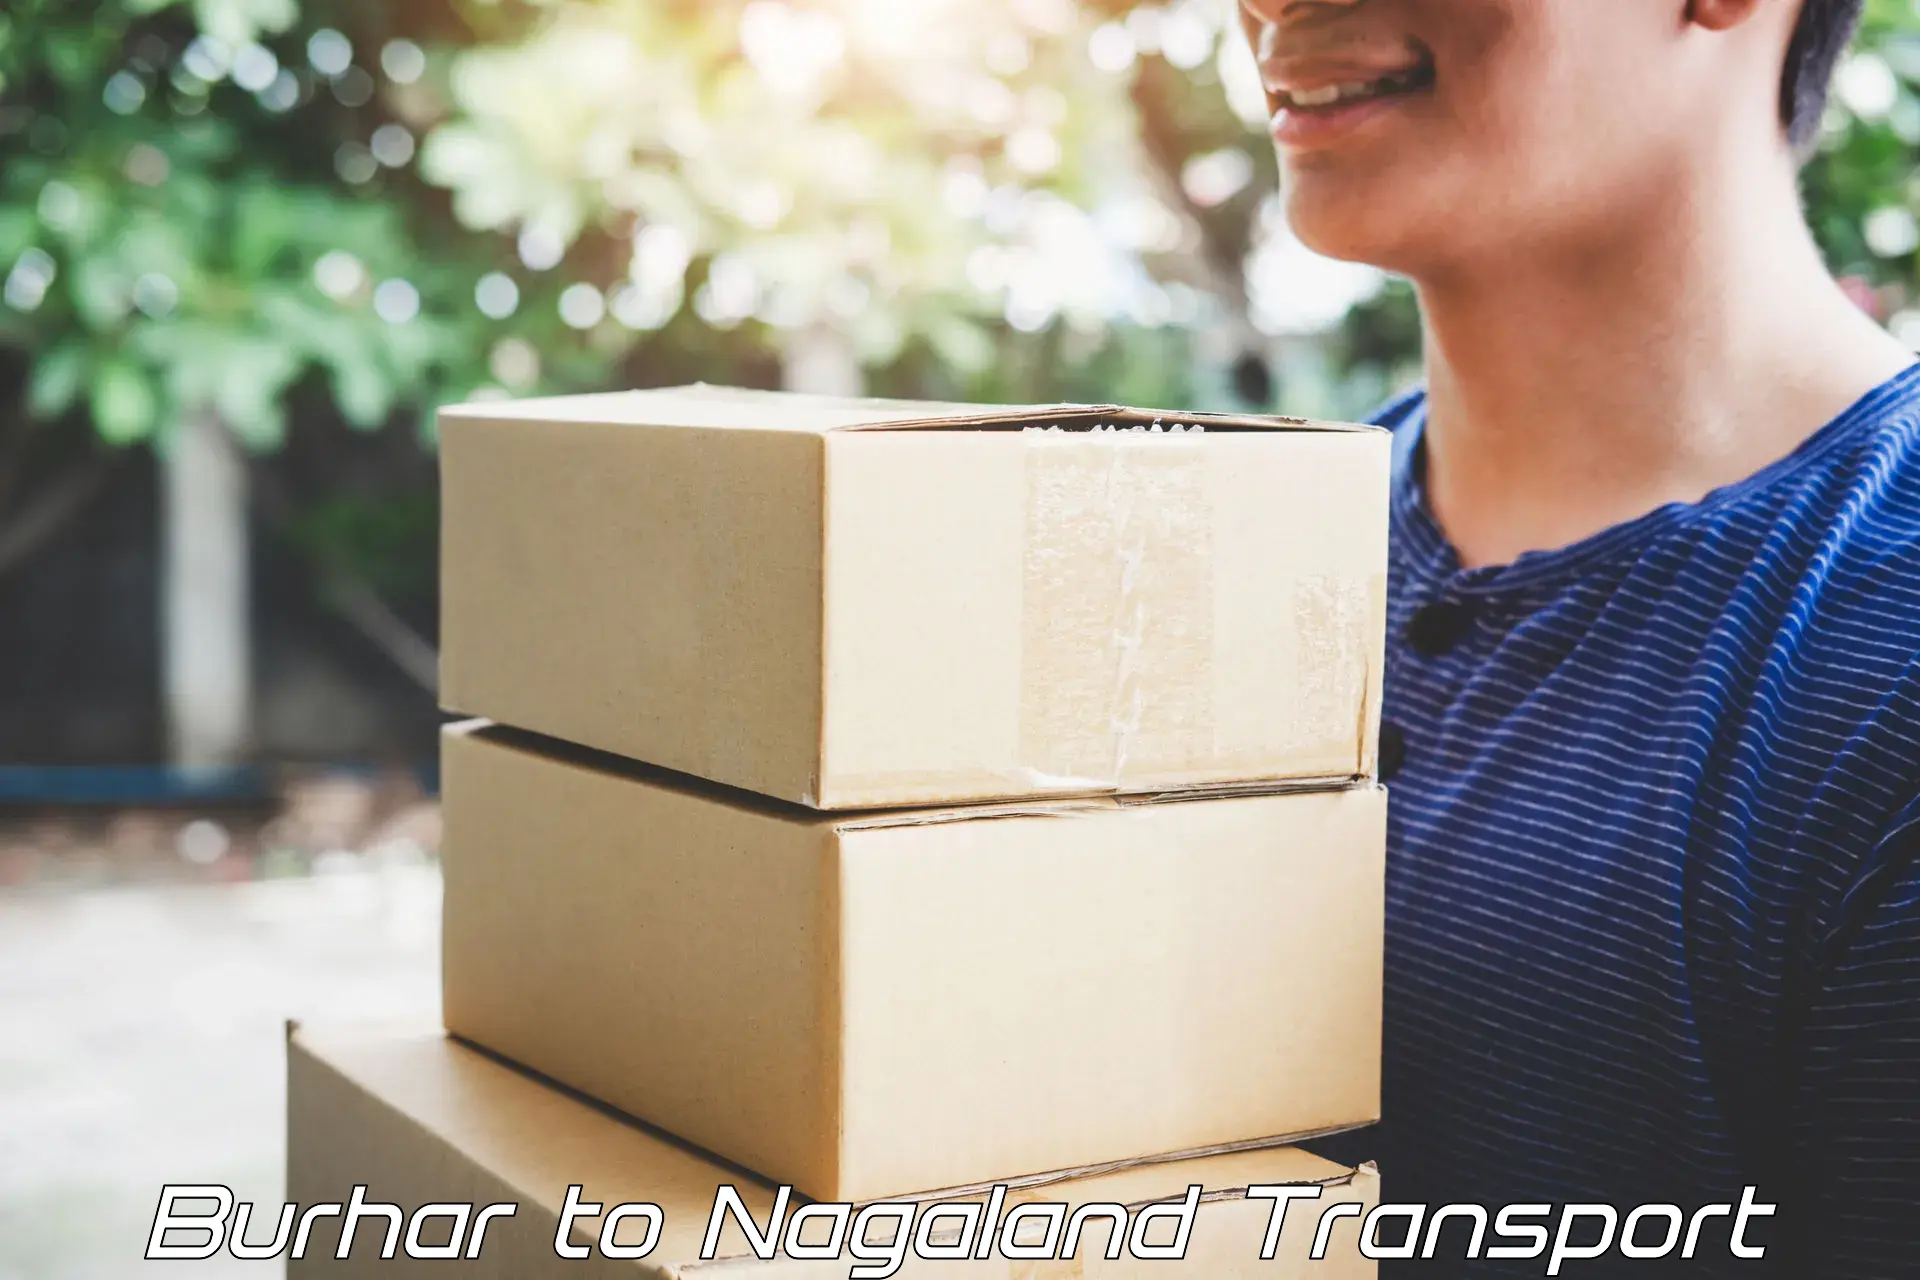 Online transport service Burhar to Nagaland